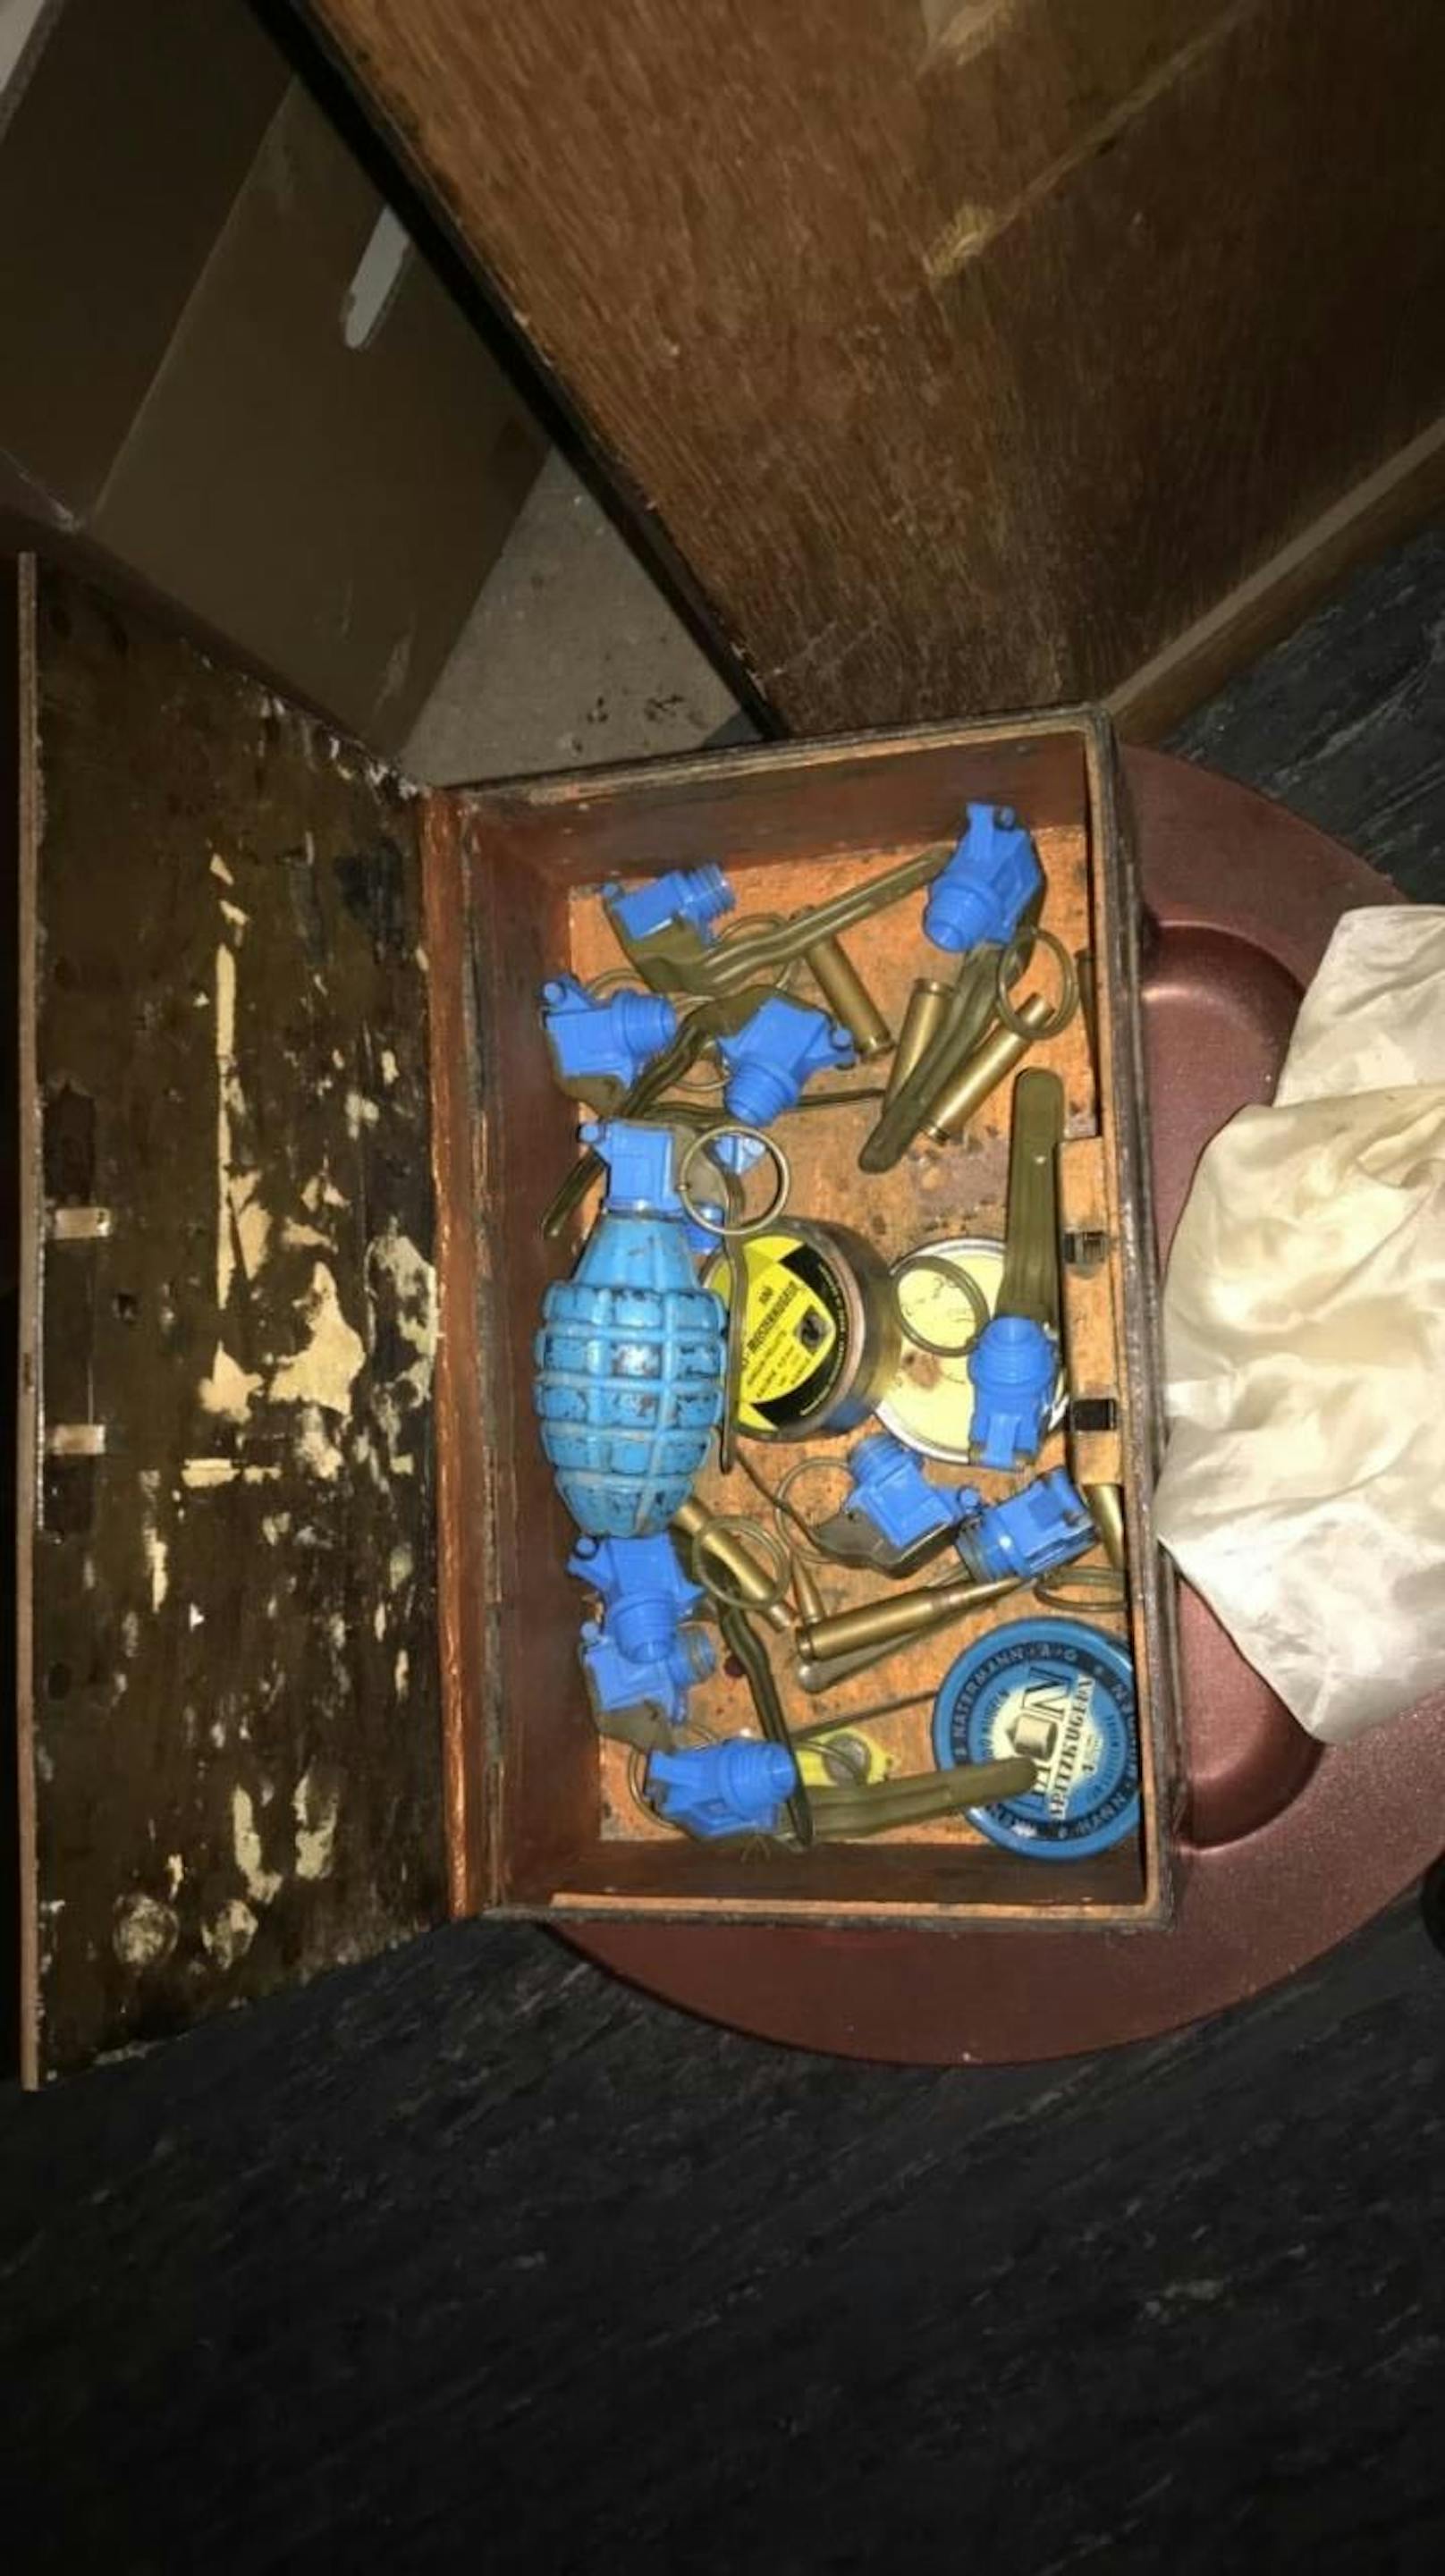 In einer Kiste wurden Munitionsteile und eine Handgranate gefunden.